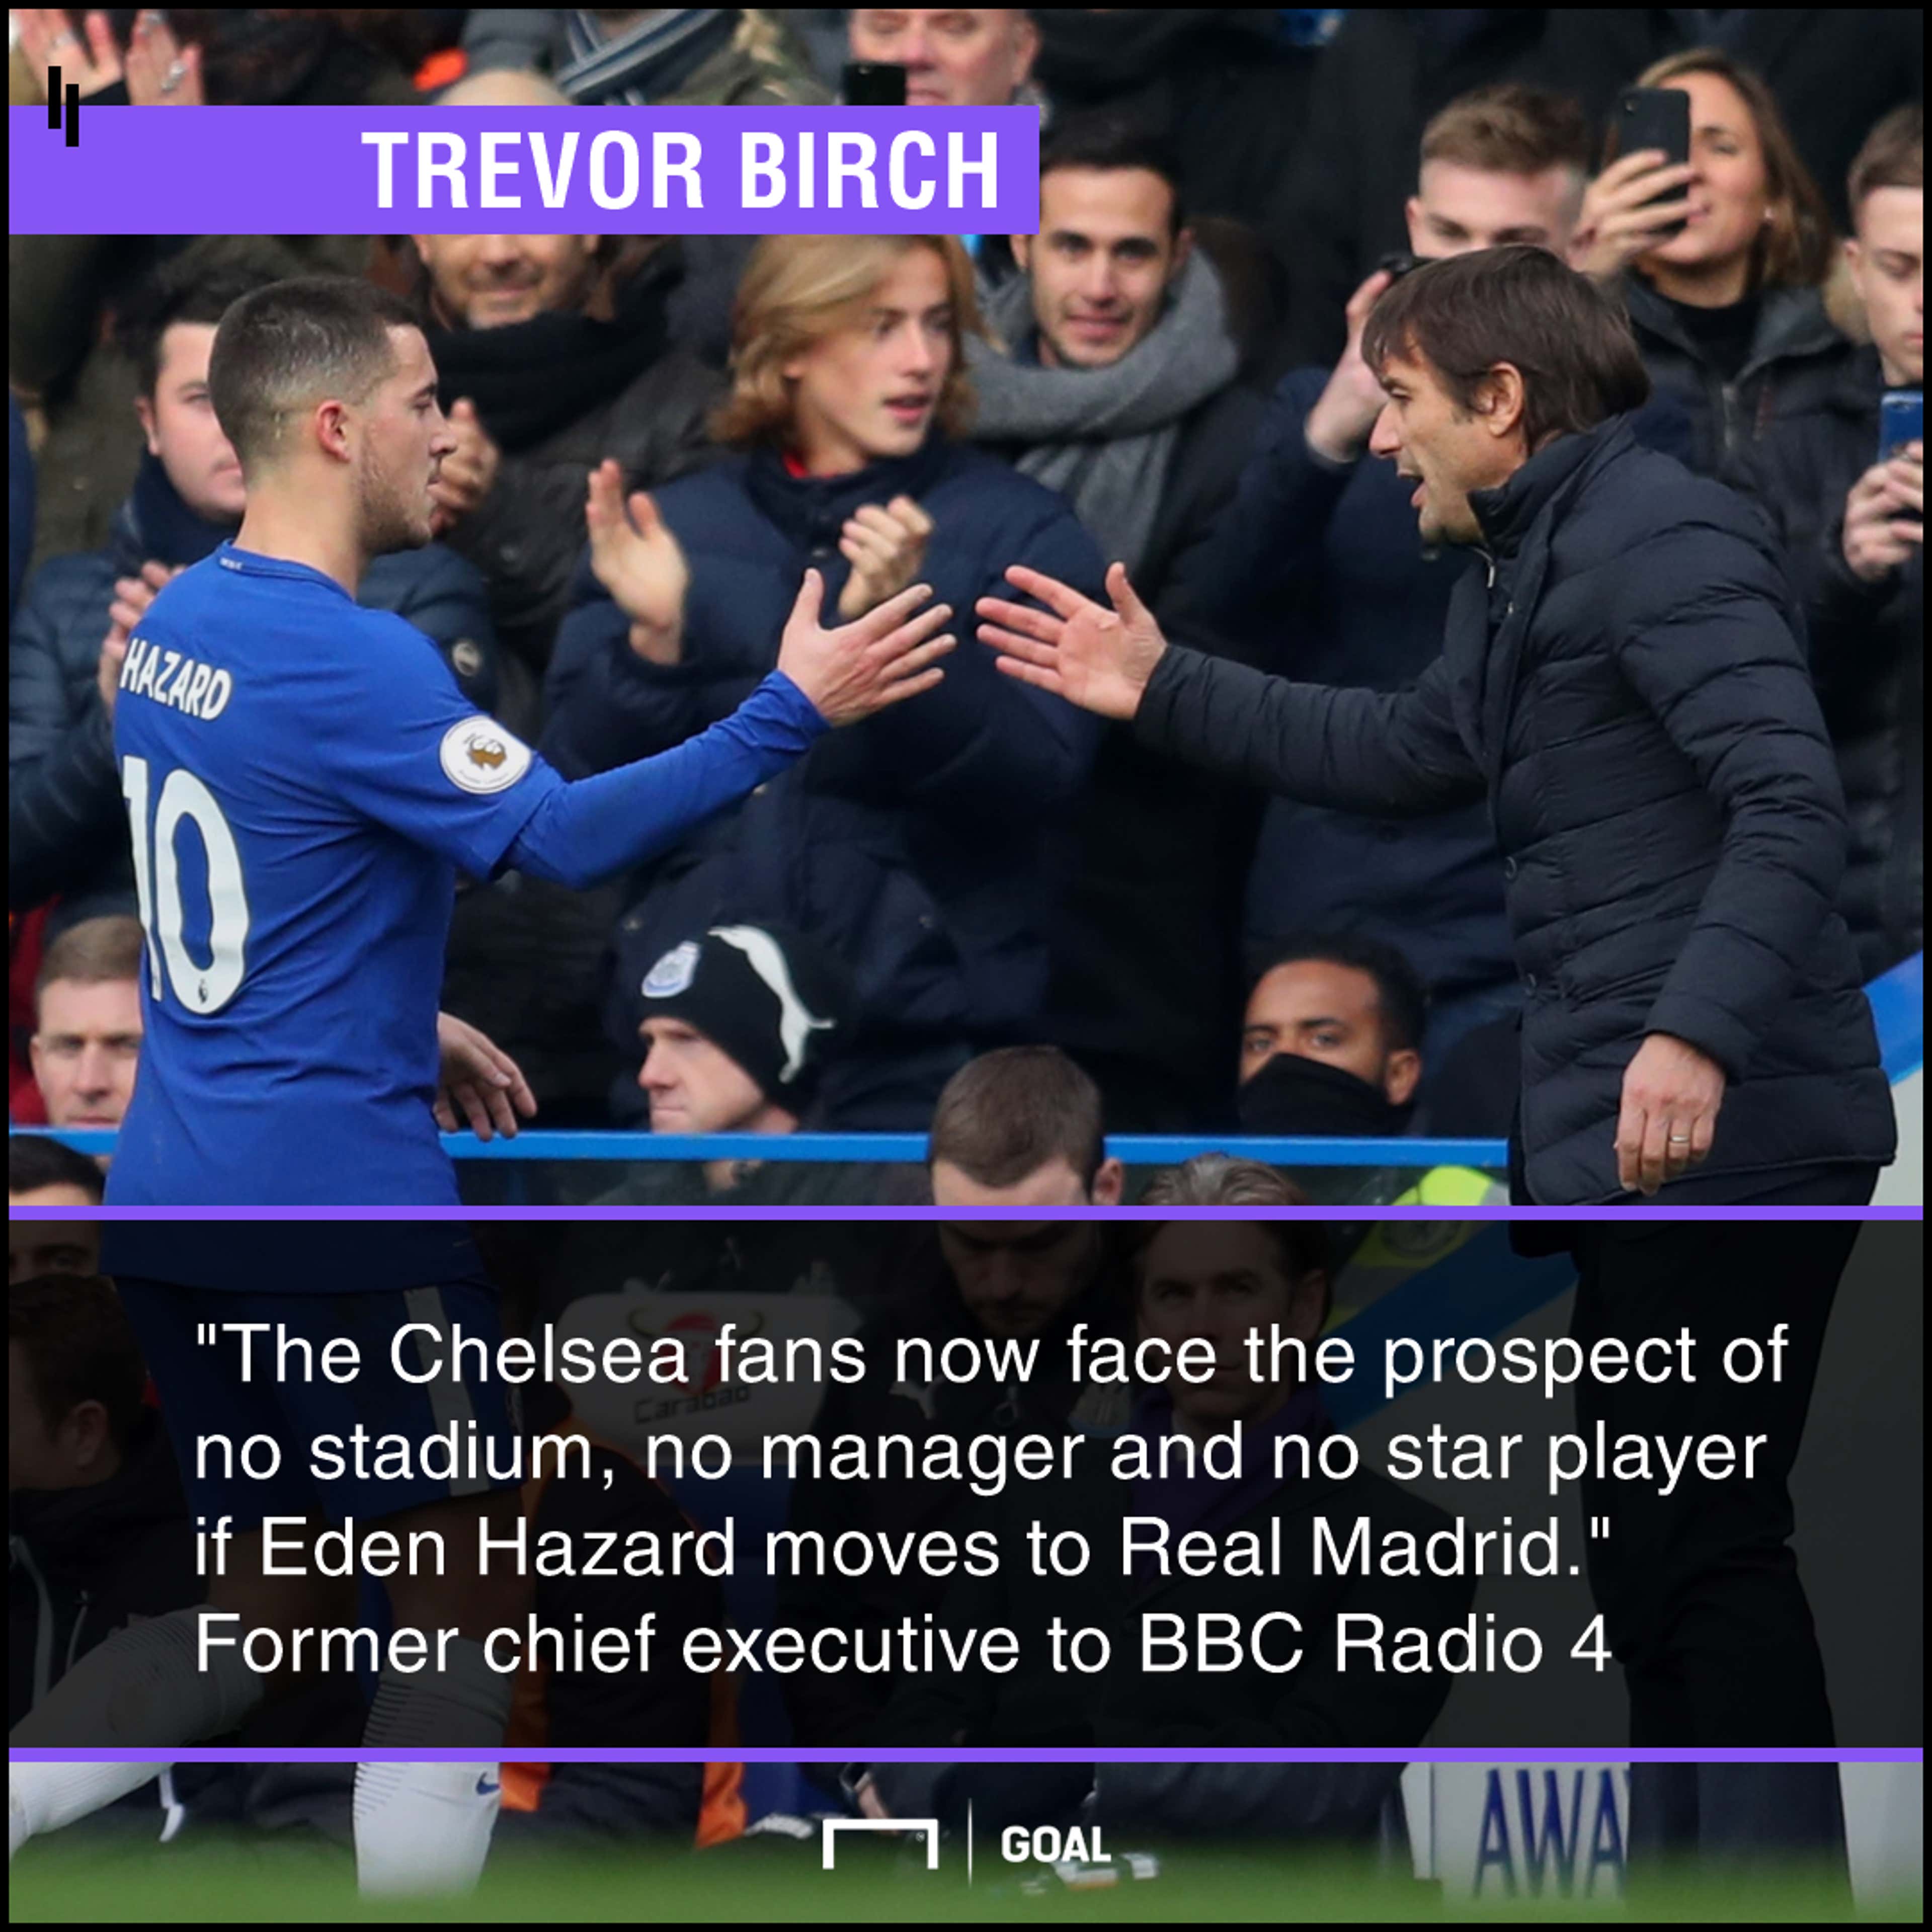 Chelsea no stadium manager star player Trevor Birch